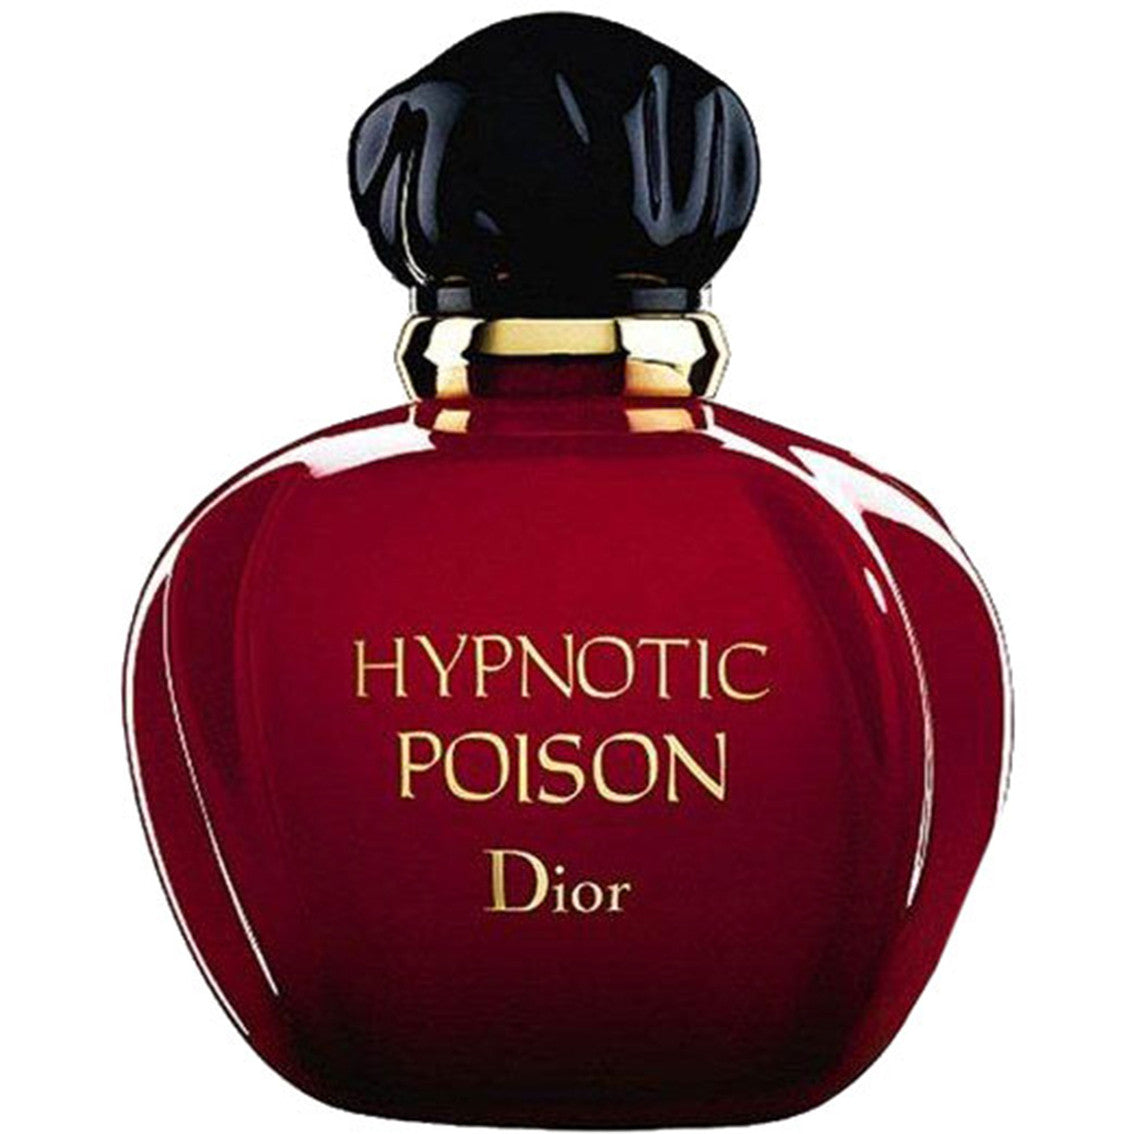 Dior Hypnotic Poison Eau De Toilette 100 ml - RossoLaccaStore